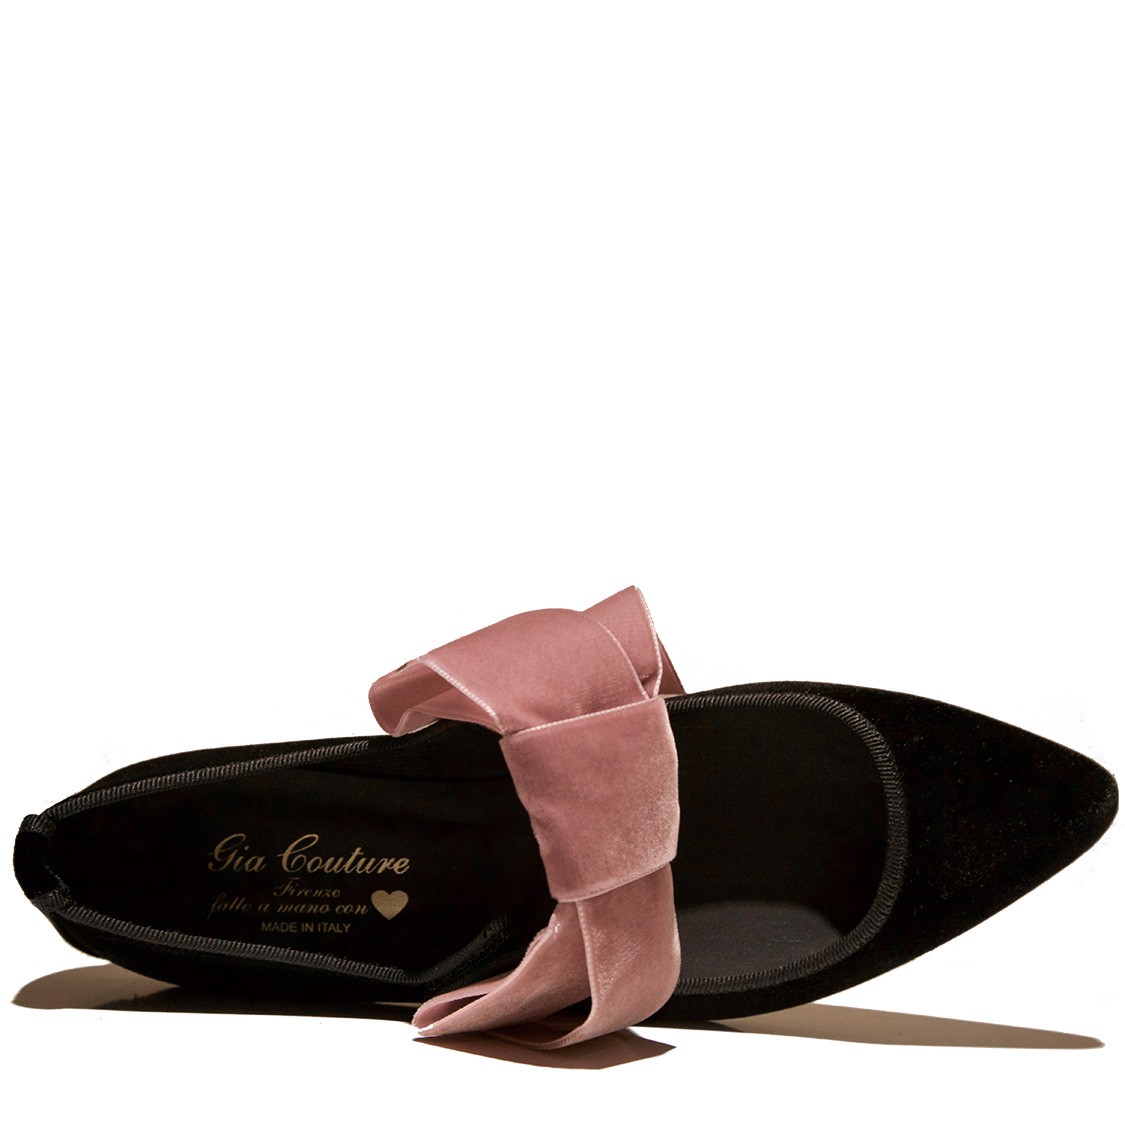 shop Gia Couture Sales Scarpe: Ballerina Gia Couture, in velluto nero, a punta, con fiocco rosa antico a contrasto, chiusura sopra con il velcro, pianta in pelle anatomica.

Composizione: 80% velluto, 20% pelle. number 1006